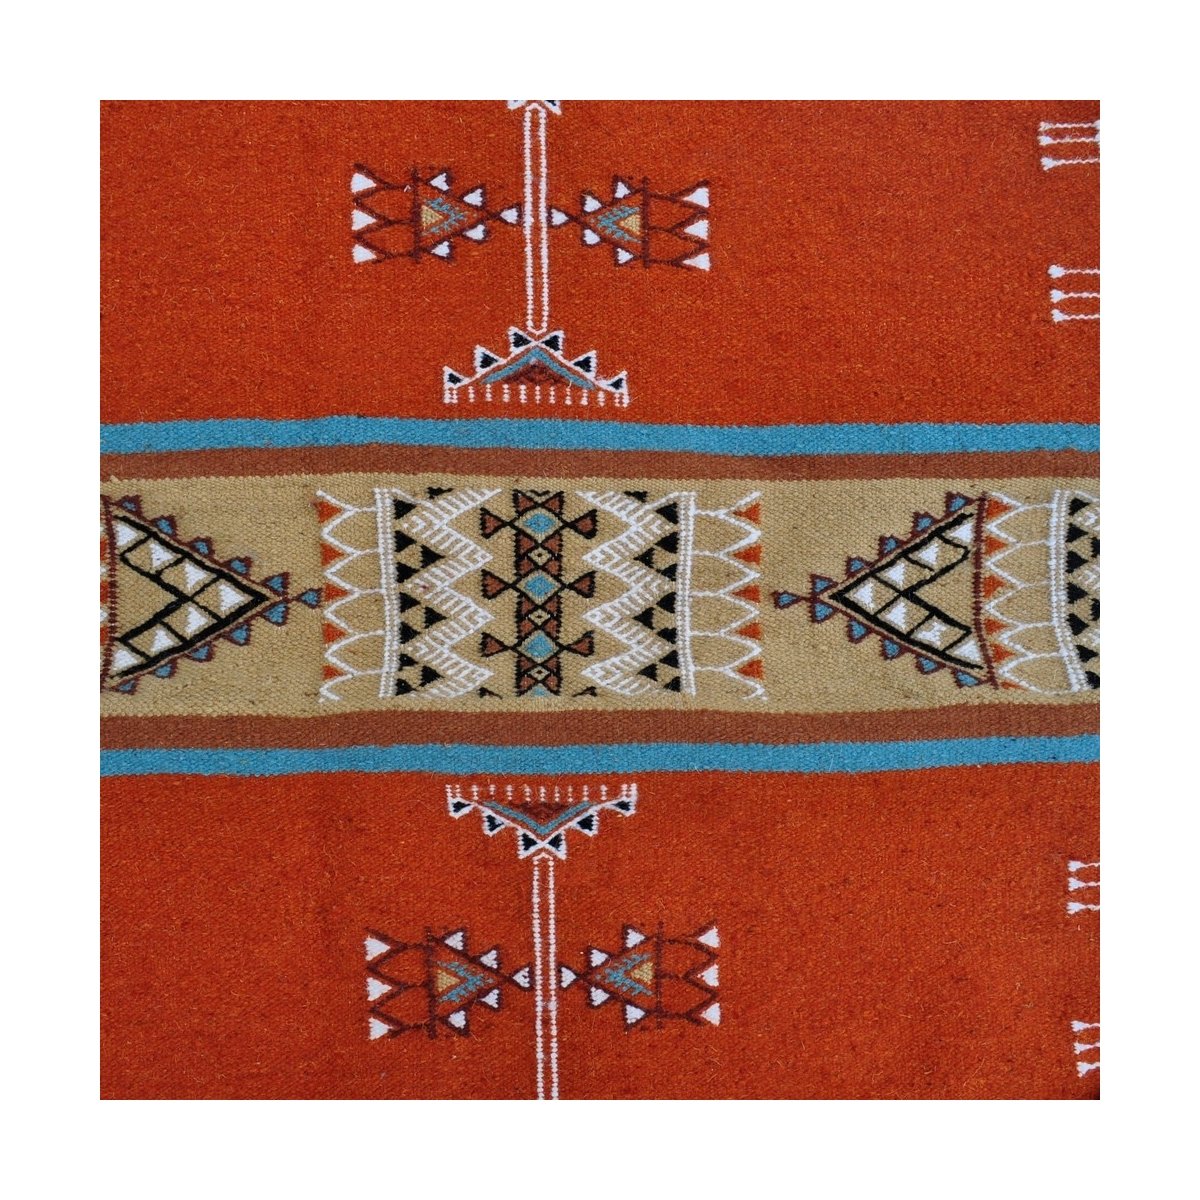 Tapete berbere Tapete Kilim Othman 110x180 Amarelo/Multicor (Tecidos à mão, Lã) Tapete tunisiano kilim, estilo marroquino. Tapet